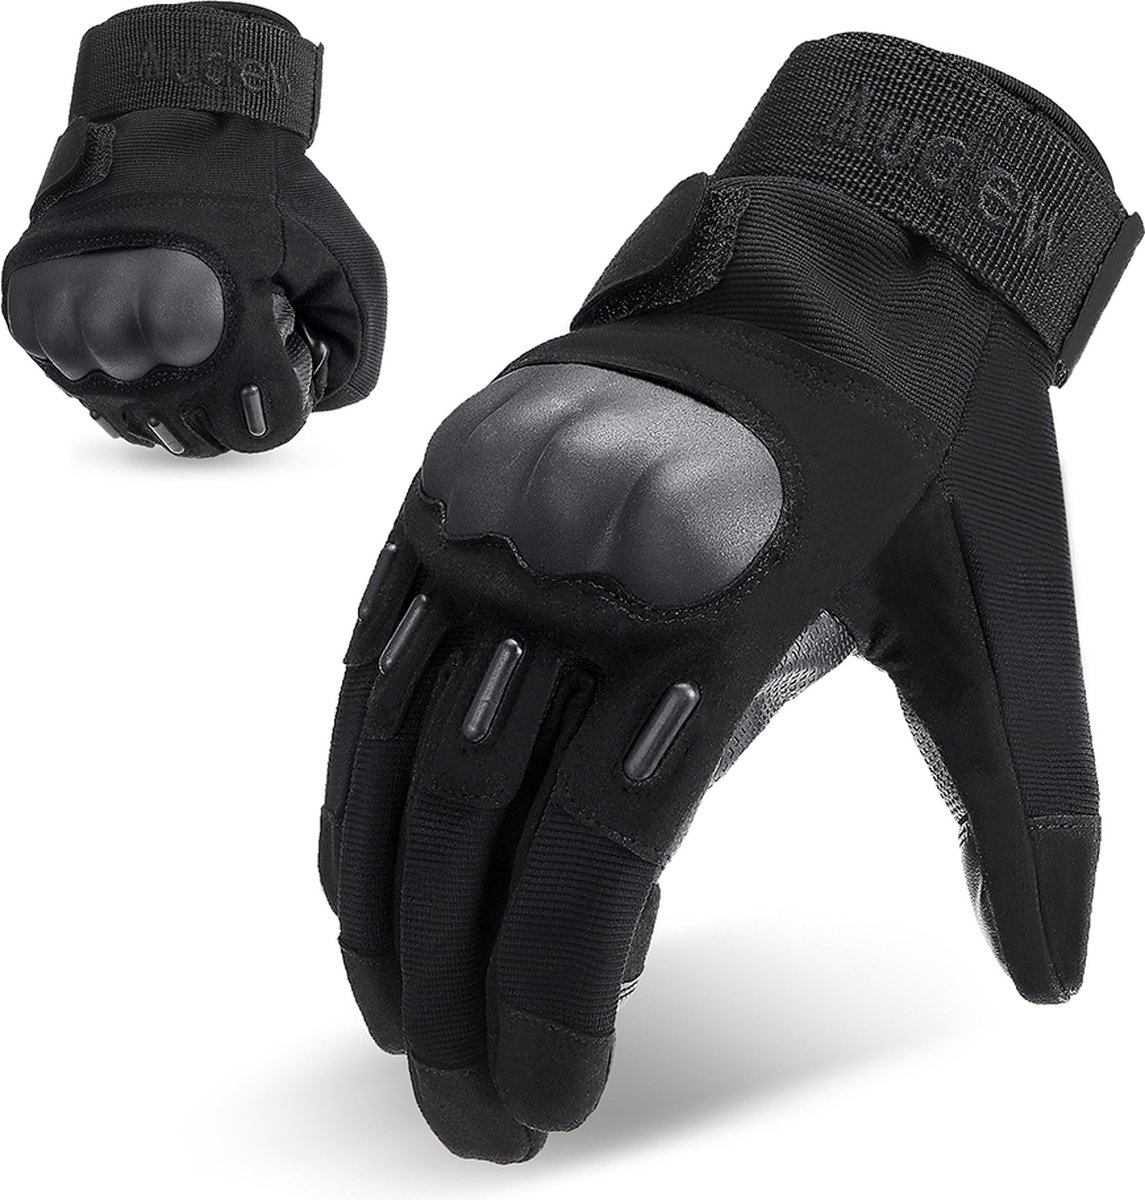 Motorhandschoenen - met Knokkelbescherming - Touchscreen - Bescherming - Zwart - Voor wandelen, fietsen, werken - L